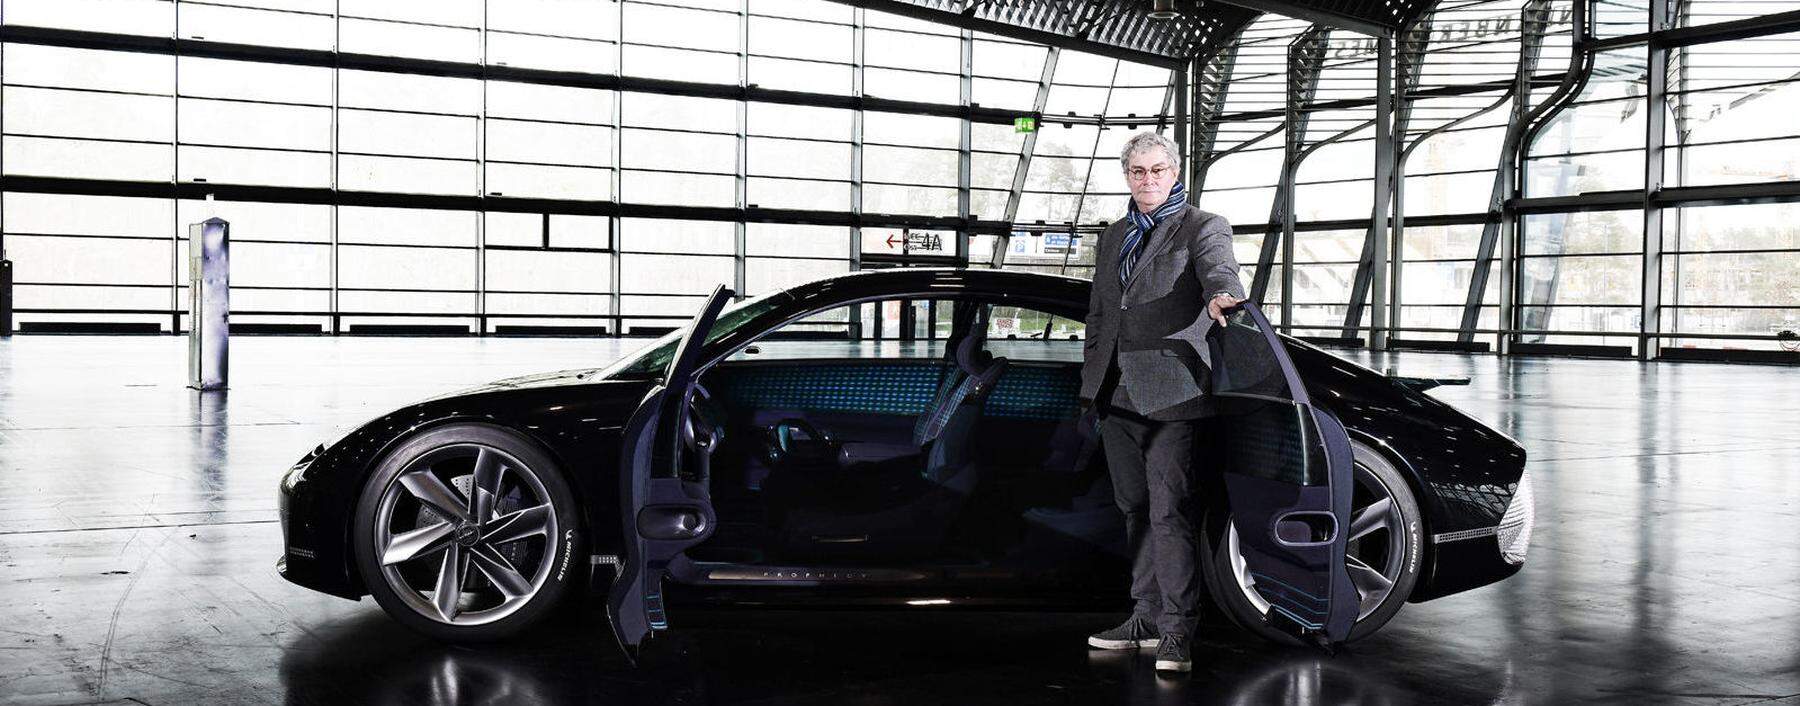 Ansehen der Marke im Rekordtempo verändert: Luc Donckerwolke vor Hyundai-Showcar Prophecy.